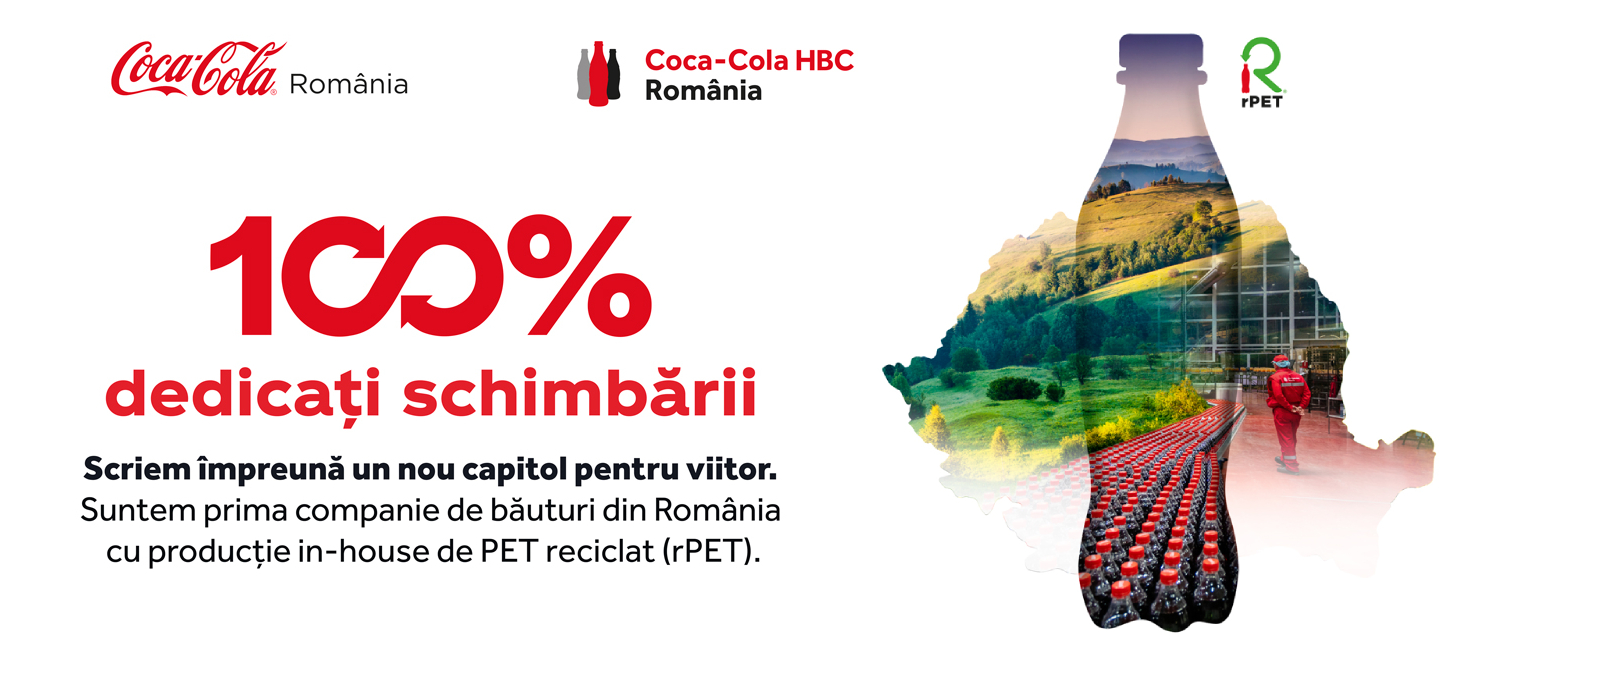 Visual dedicat campaniei Coca-Cola Romaniei de lansare a sticlelor rPET